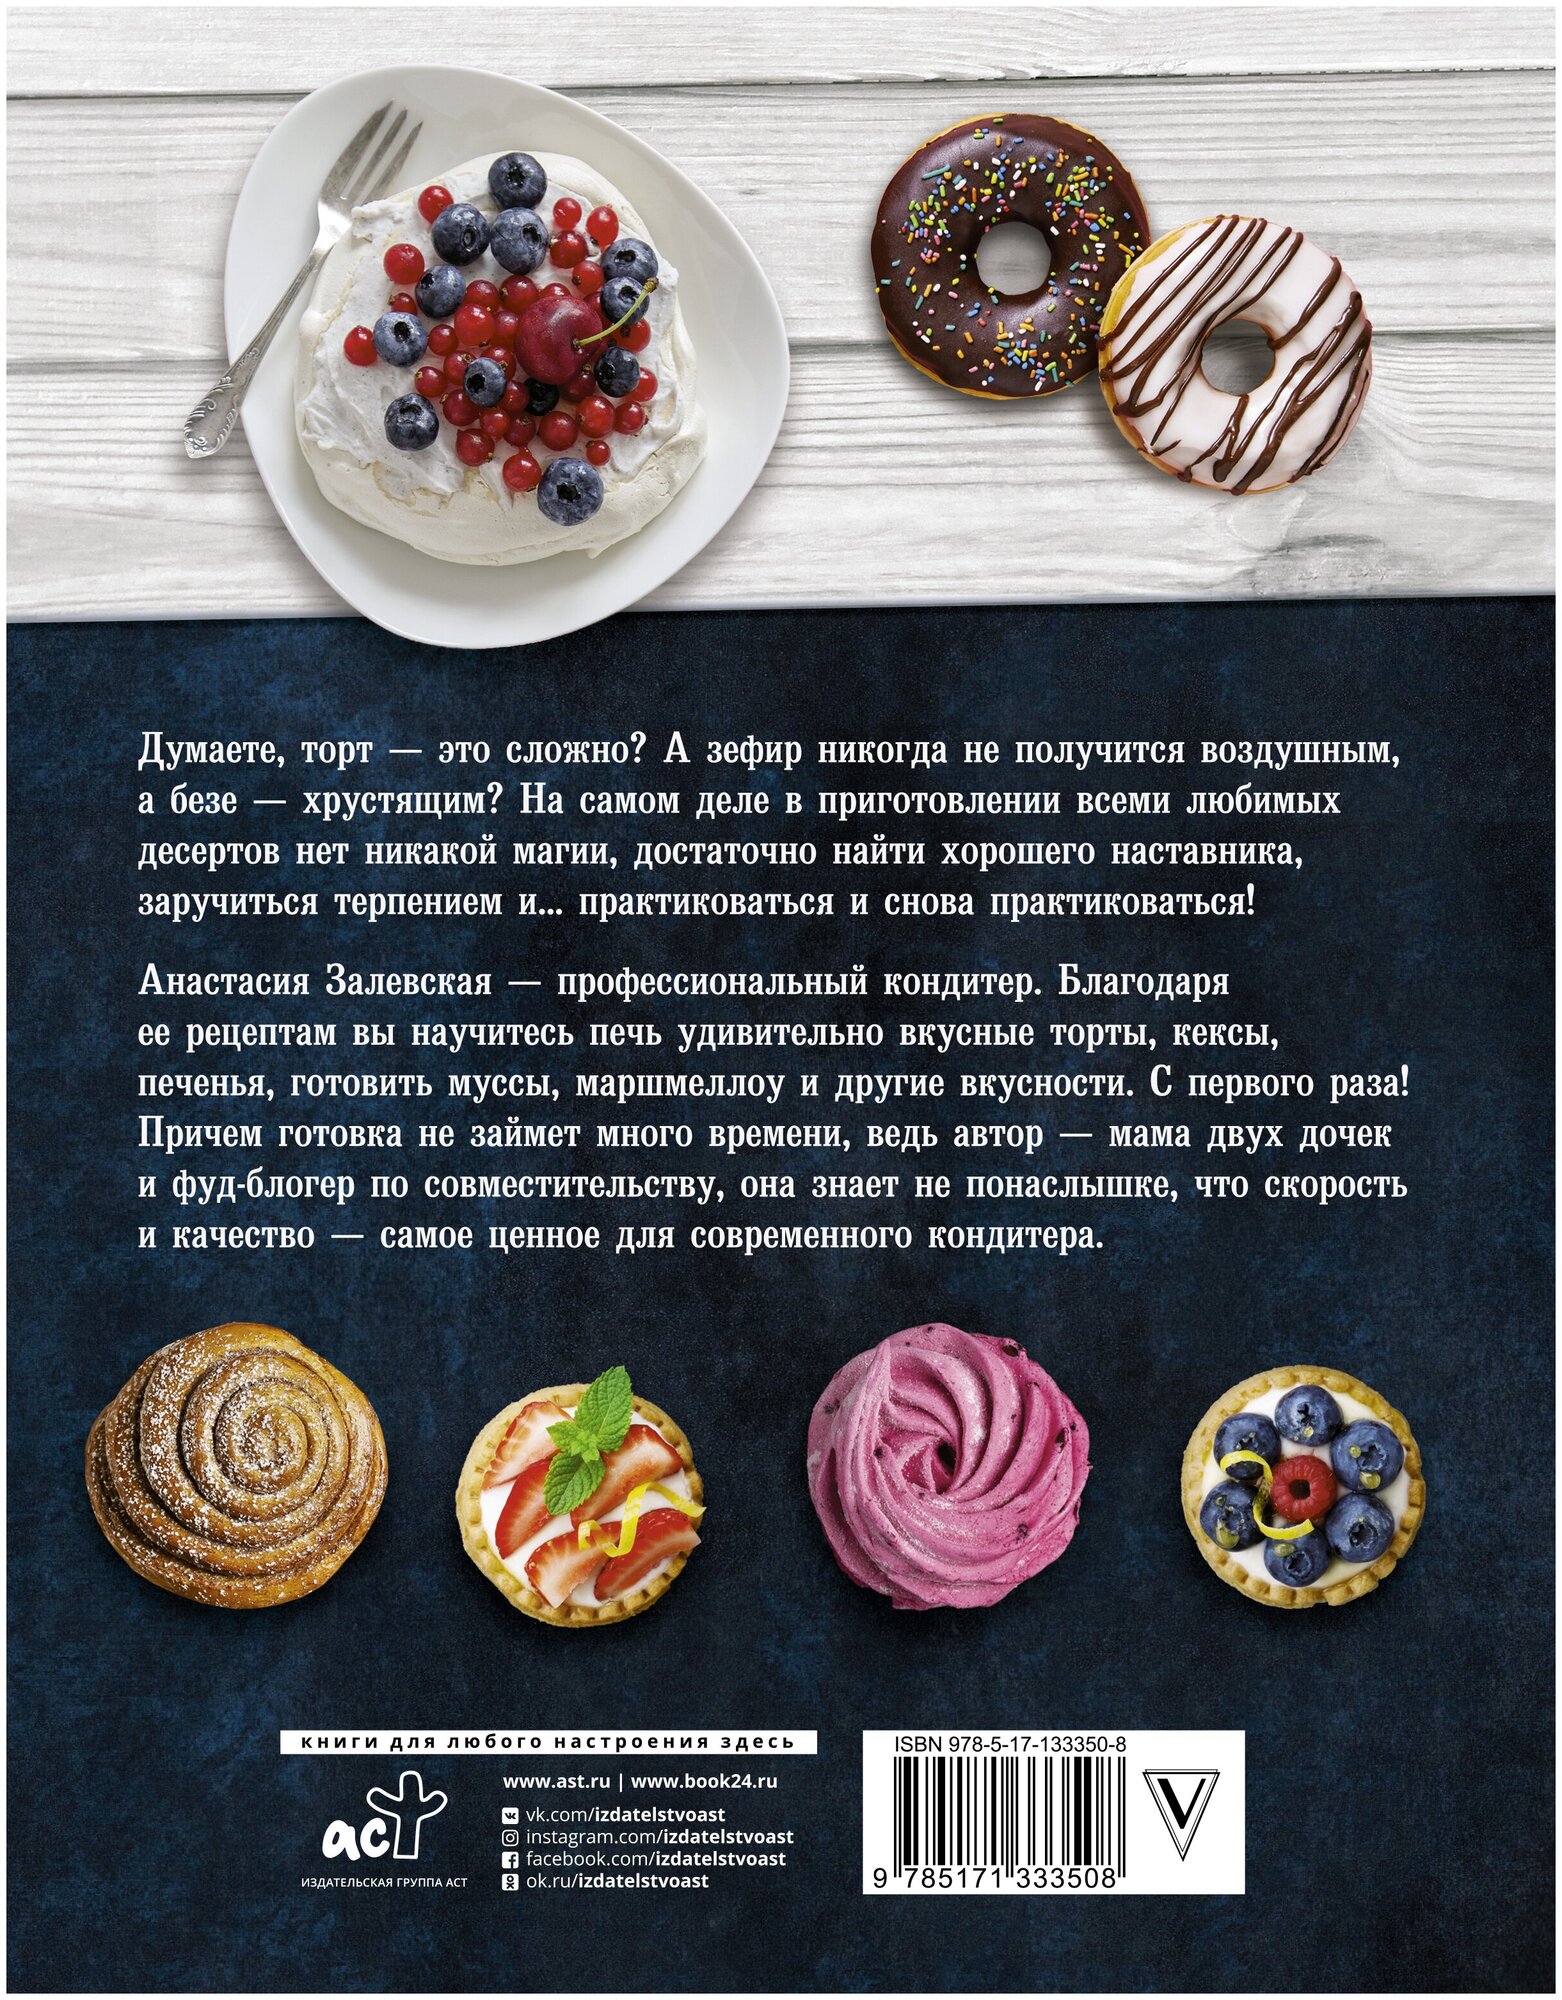 PRO десерты (Залевская Анастасия Викторовна) - фото №2